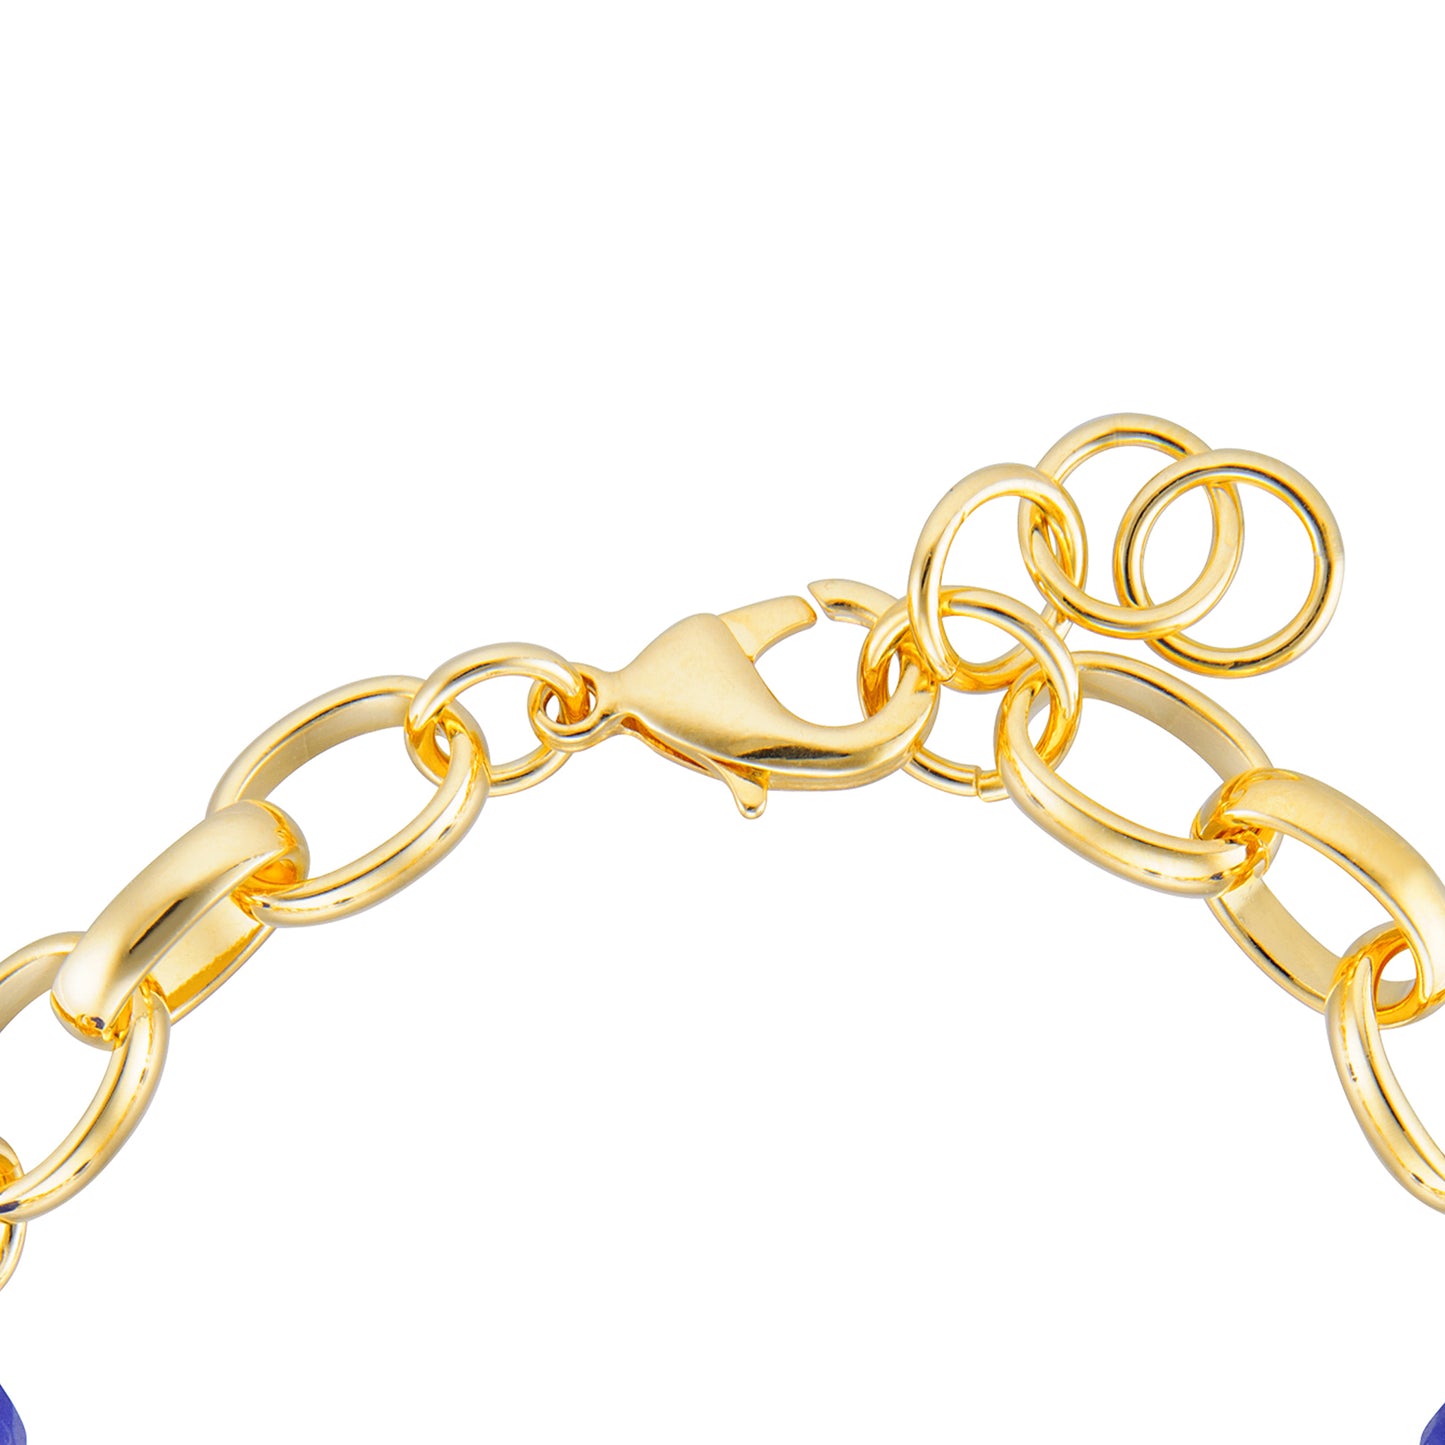 8" Blue Agate Oval Rolo Bracelet